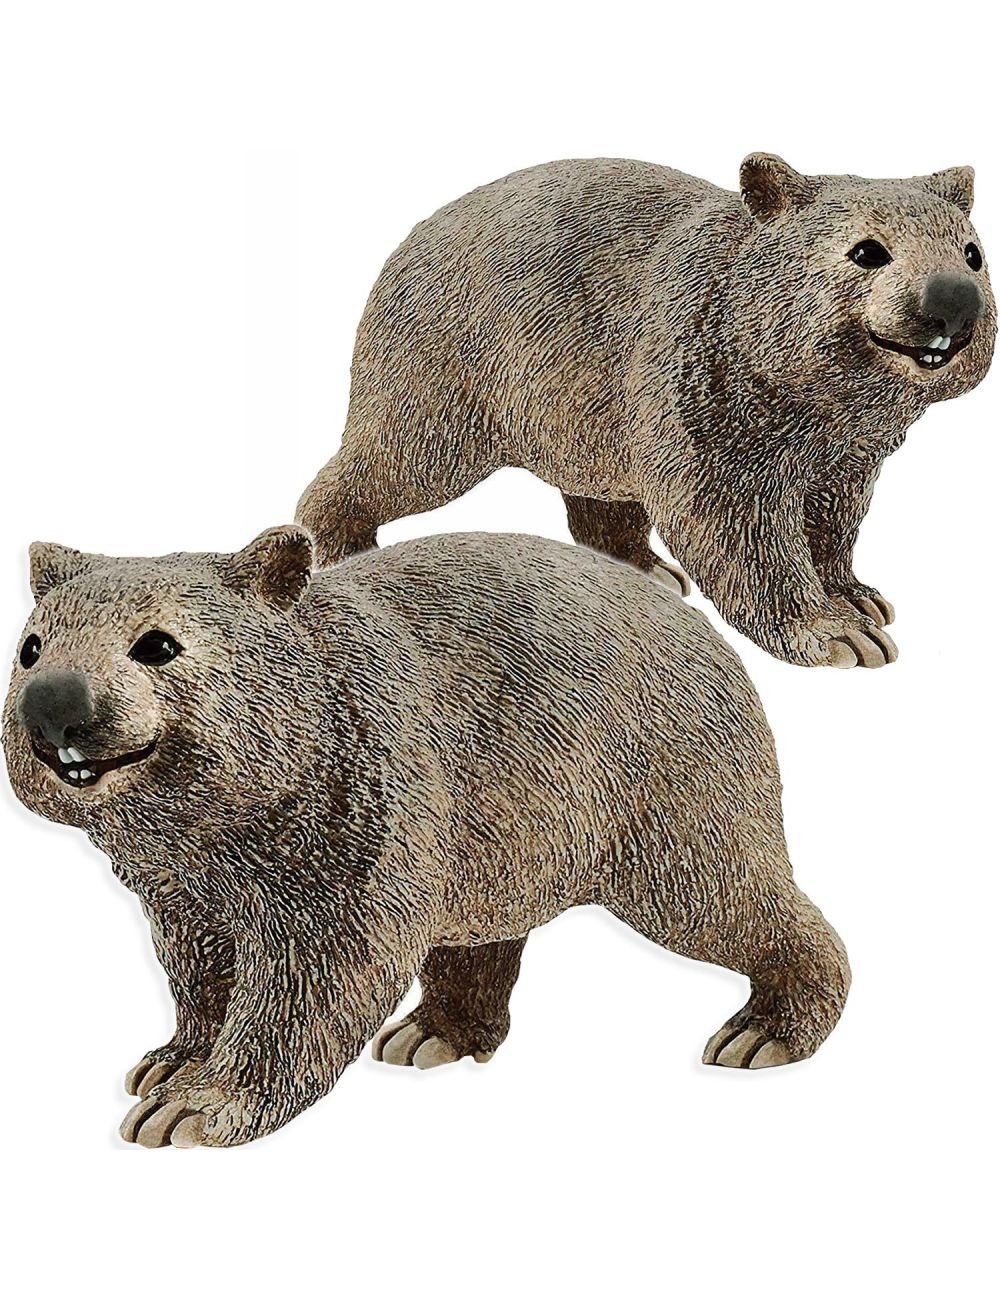 Schleich Wombat Figurka Wild Life 14834